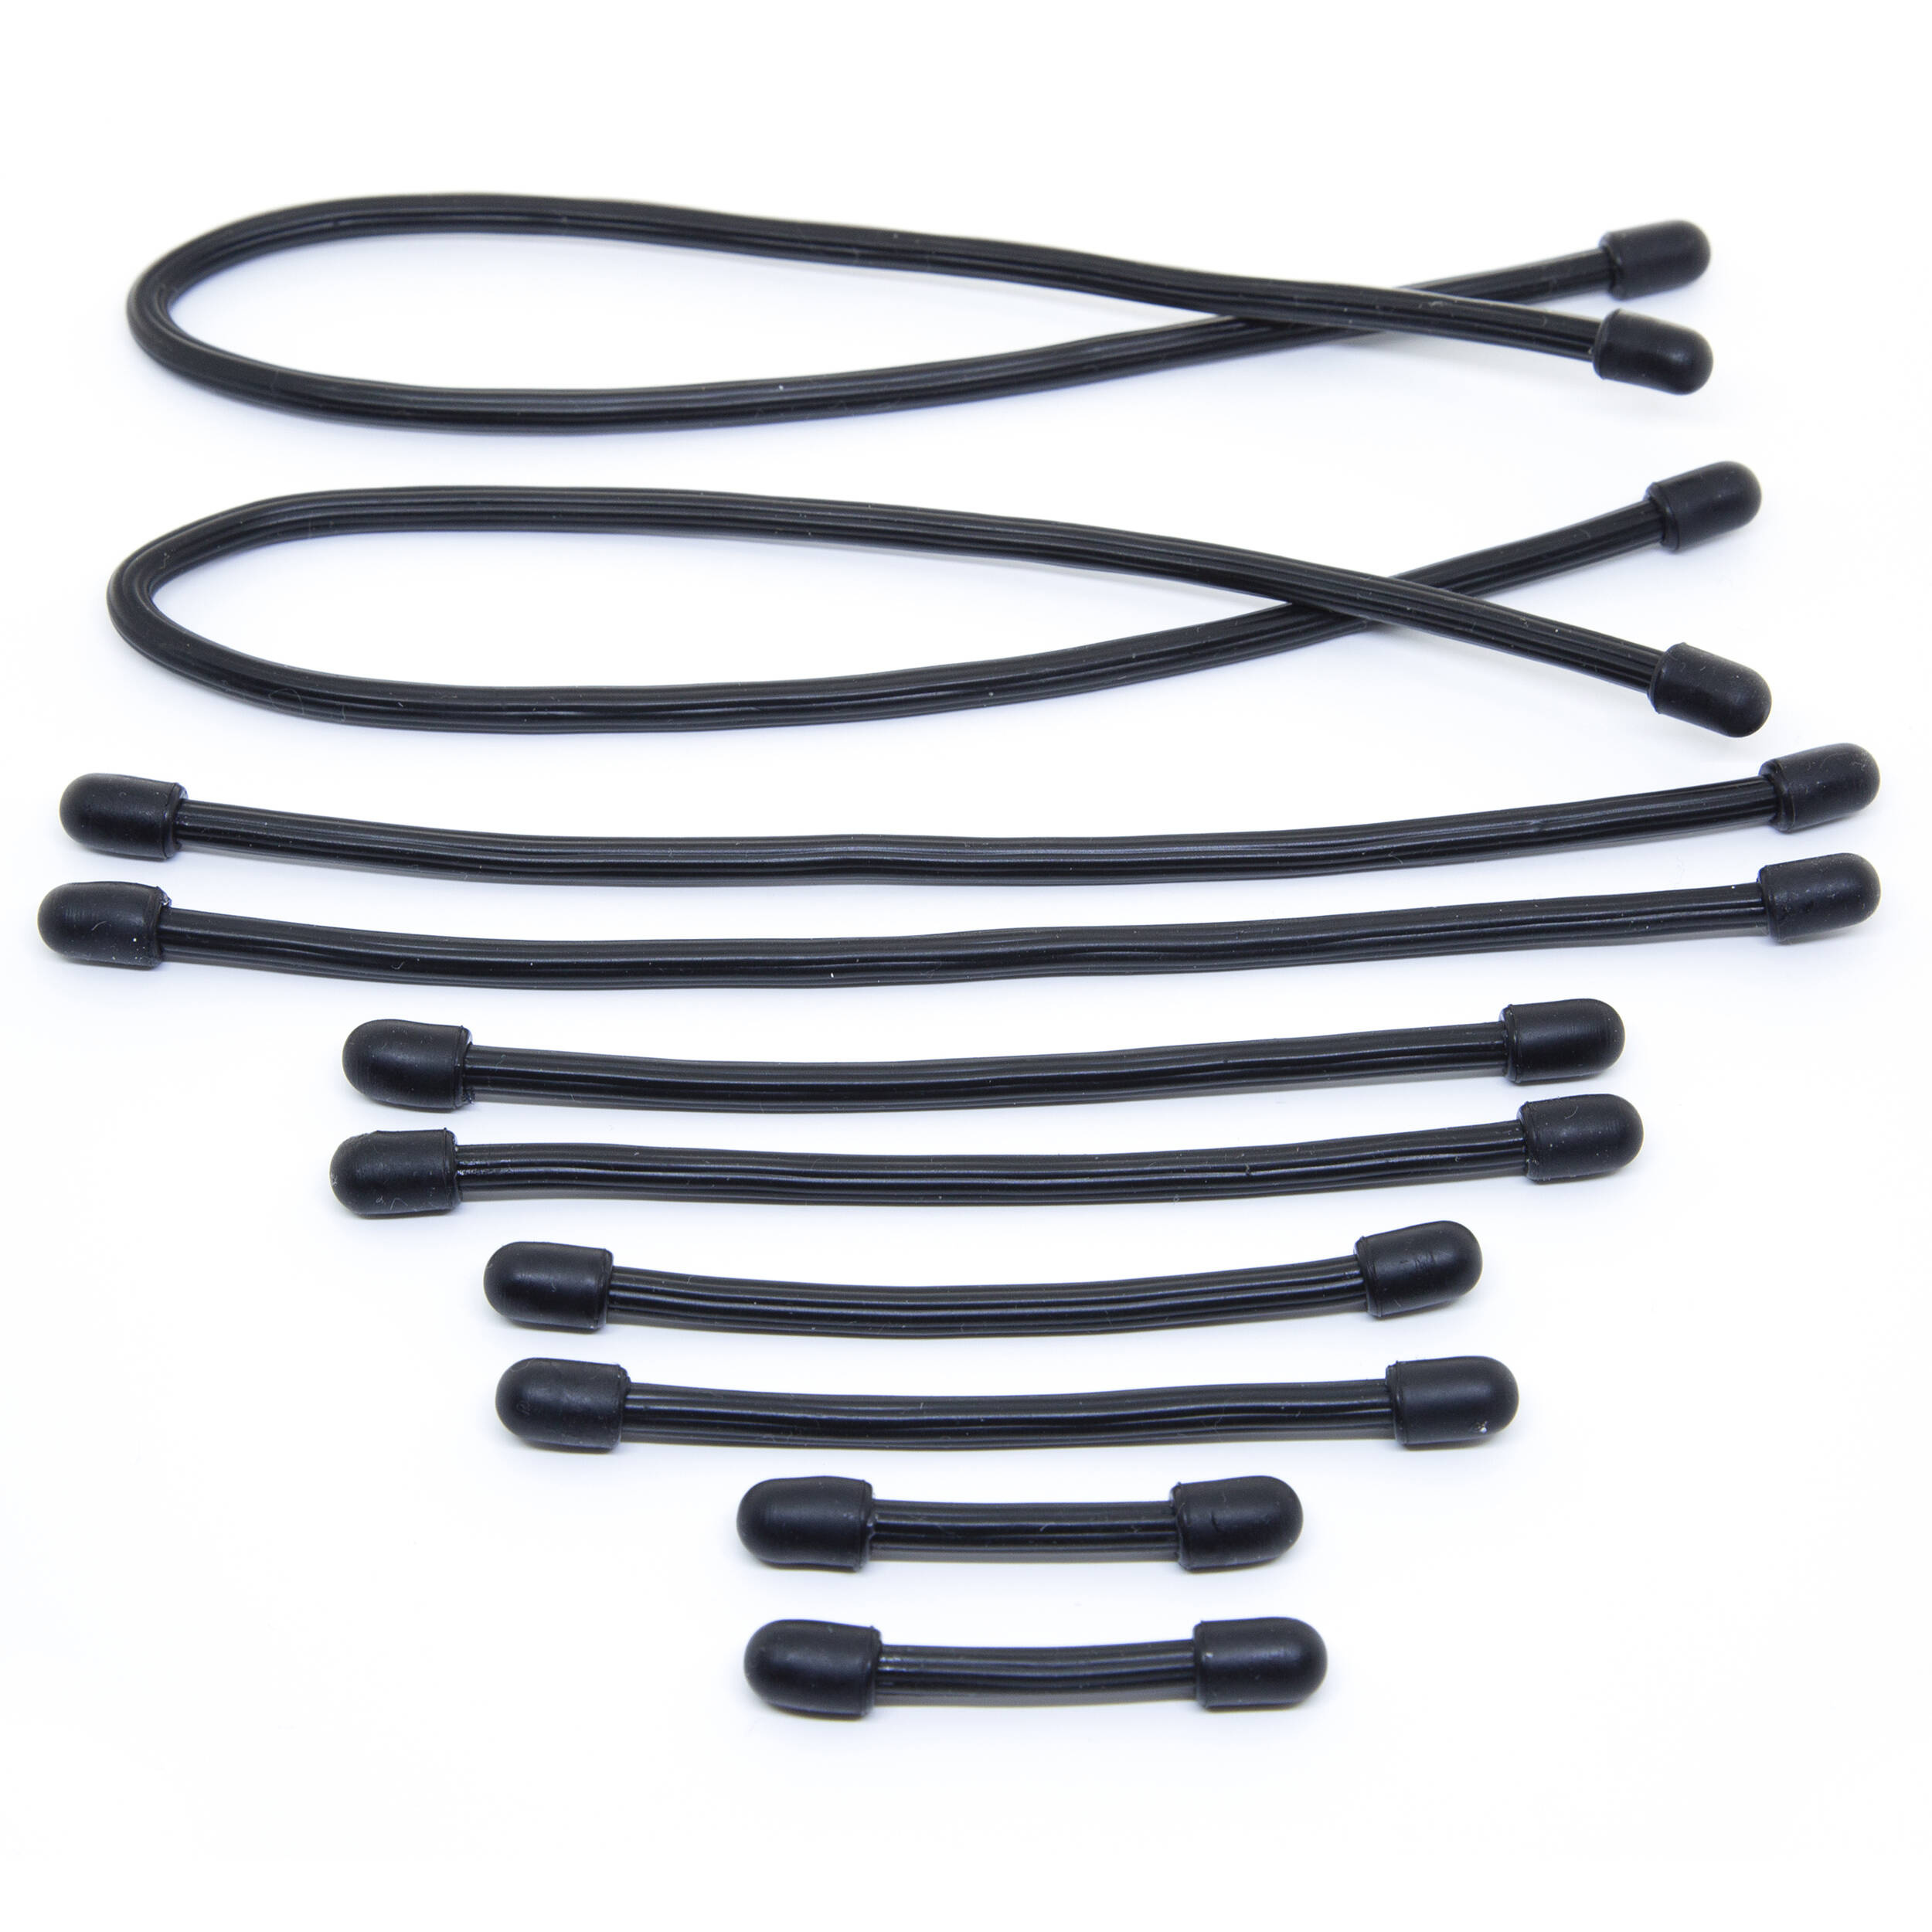 Bubblebee Industries Cable Binders (Black, 10-Pack)